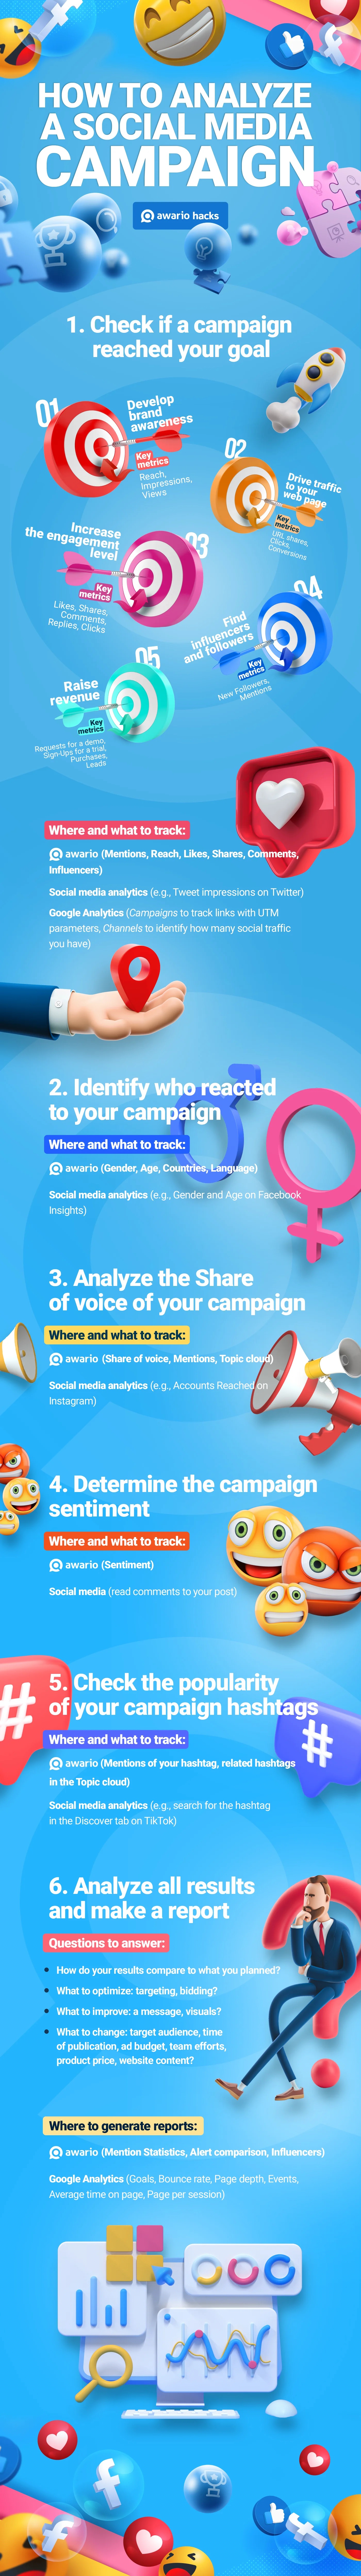 Awario infographic: How to analyze a social media campaign